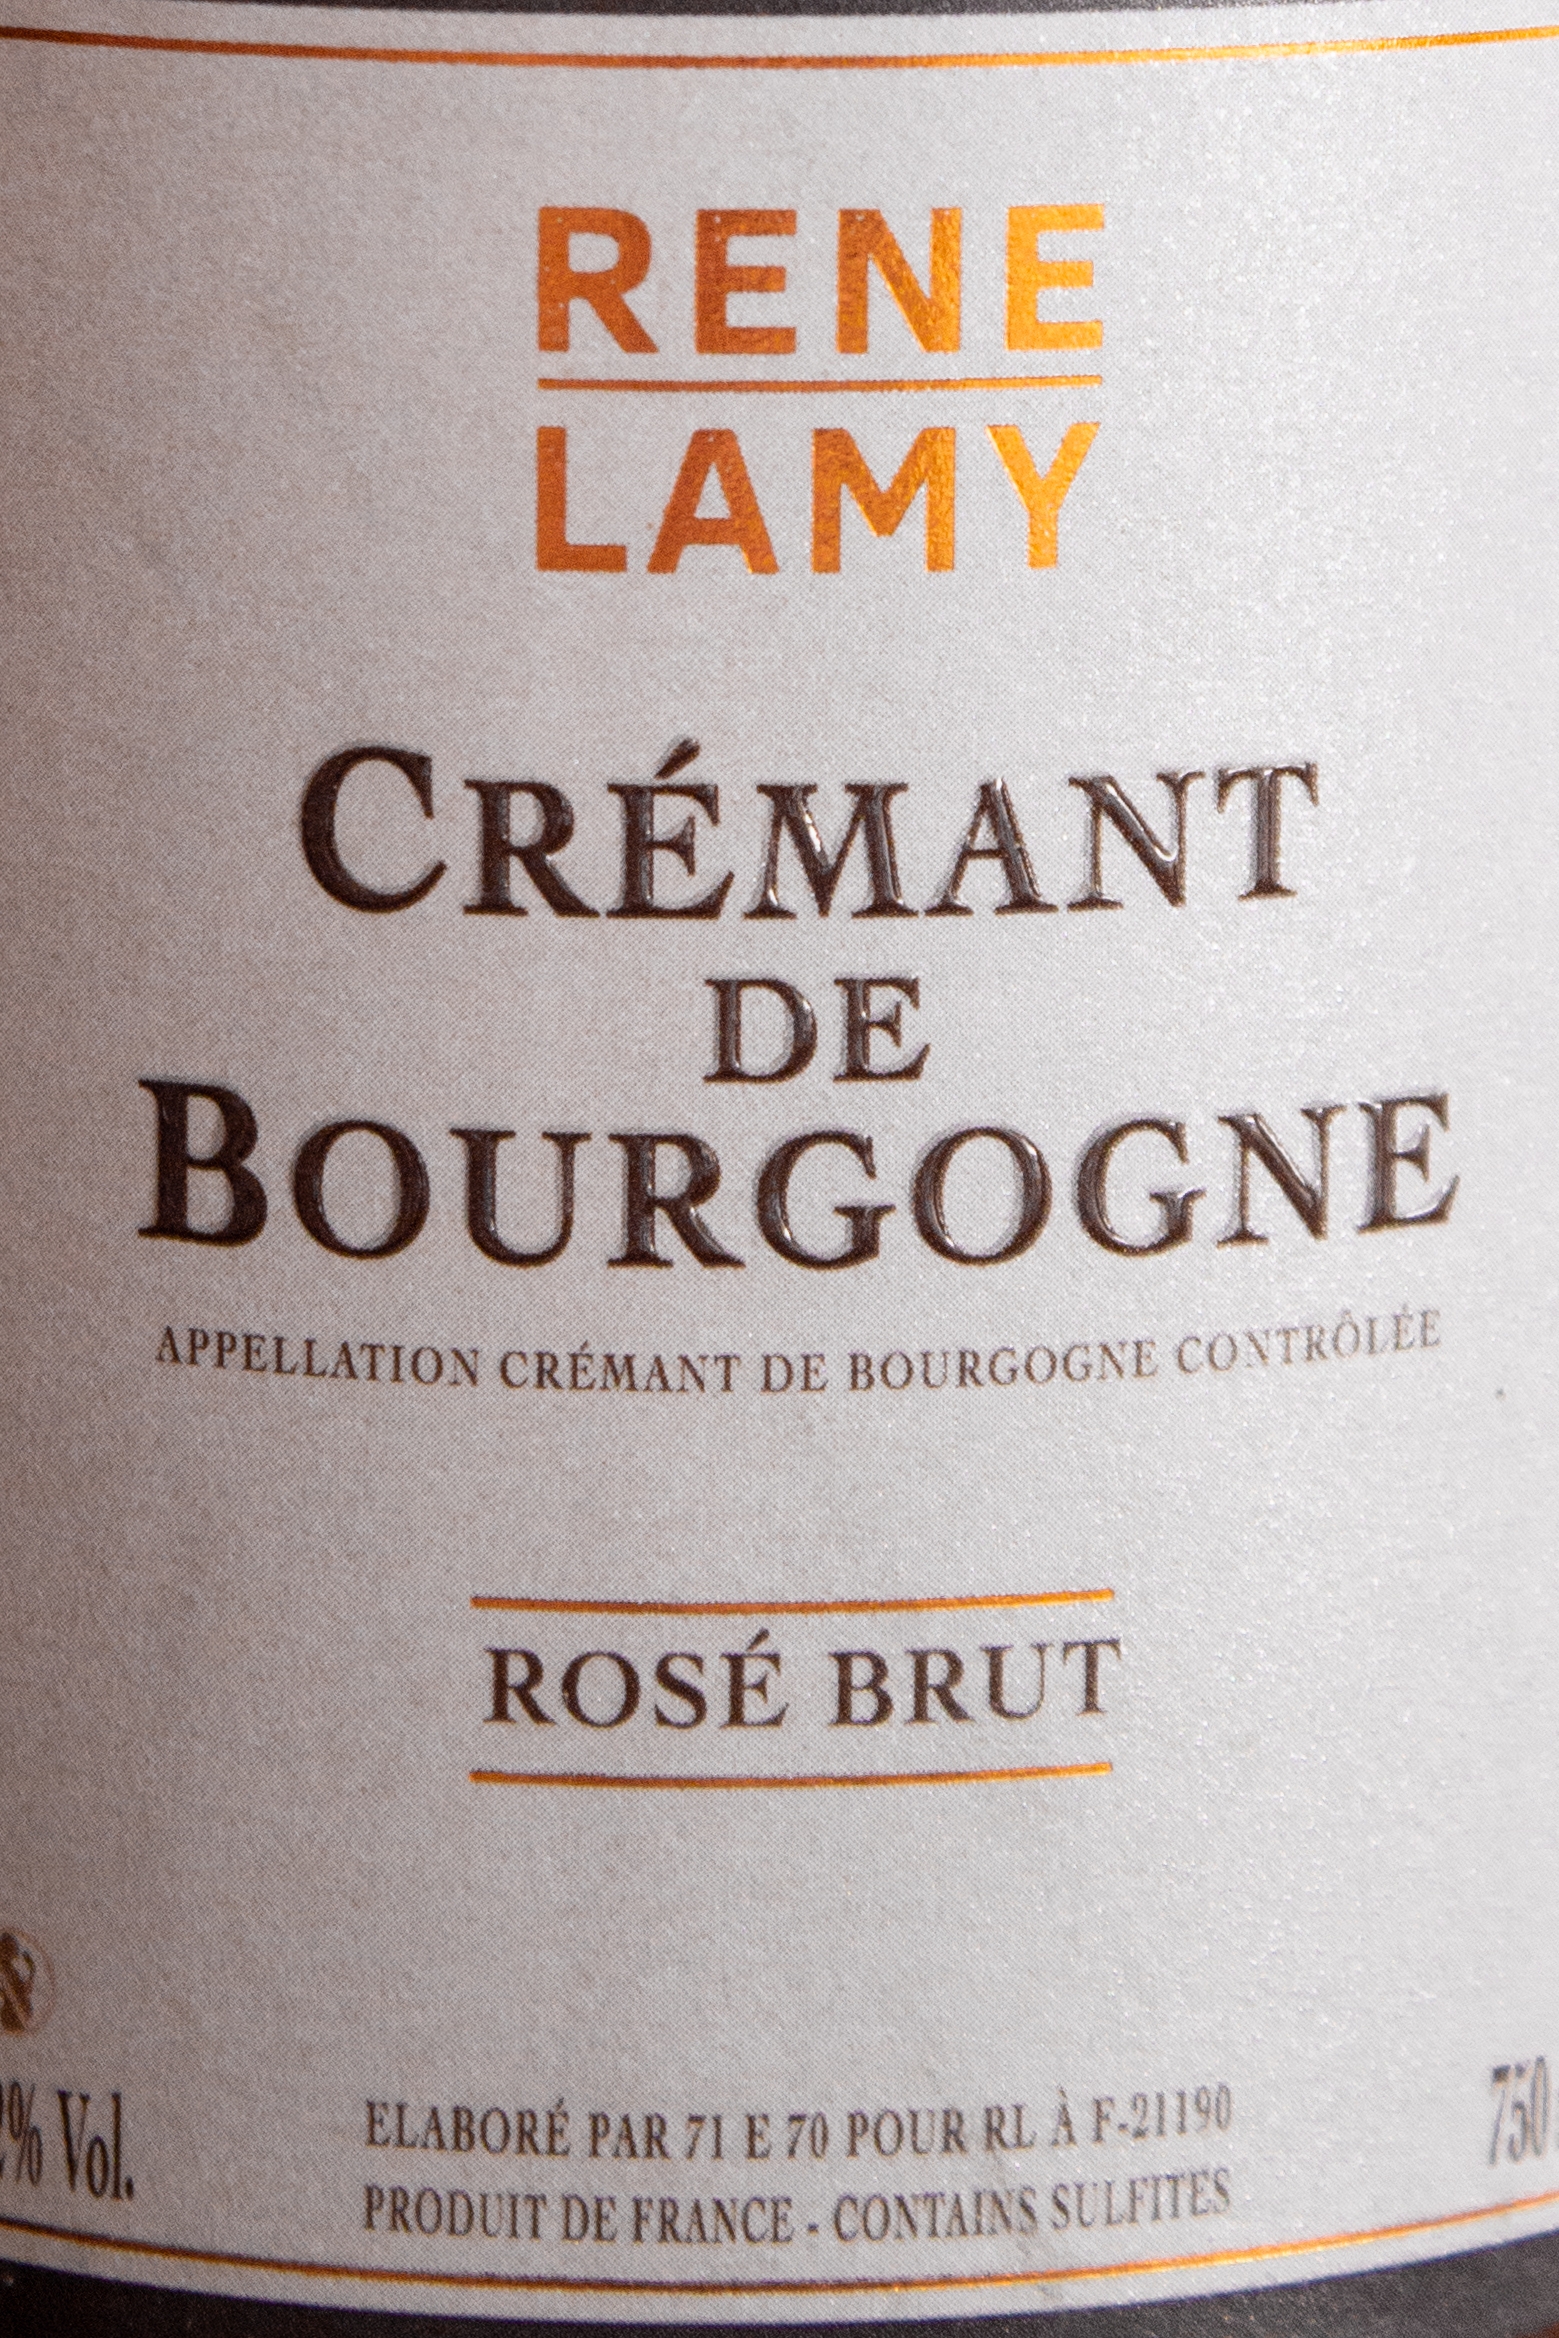 Этикетка Rene Lamy Cremant de Bourgogne Rose Brut